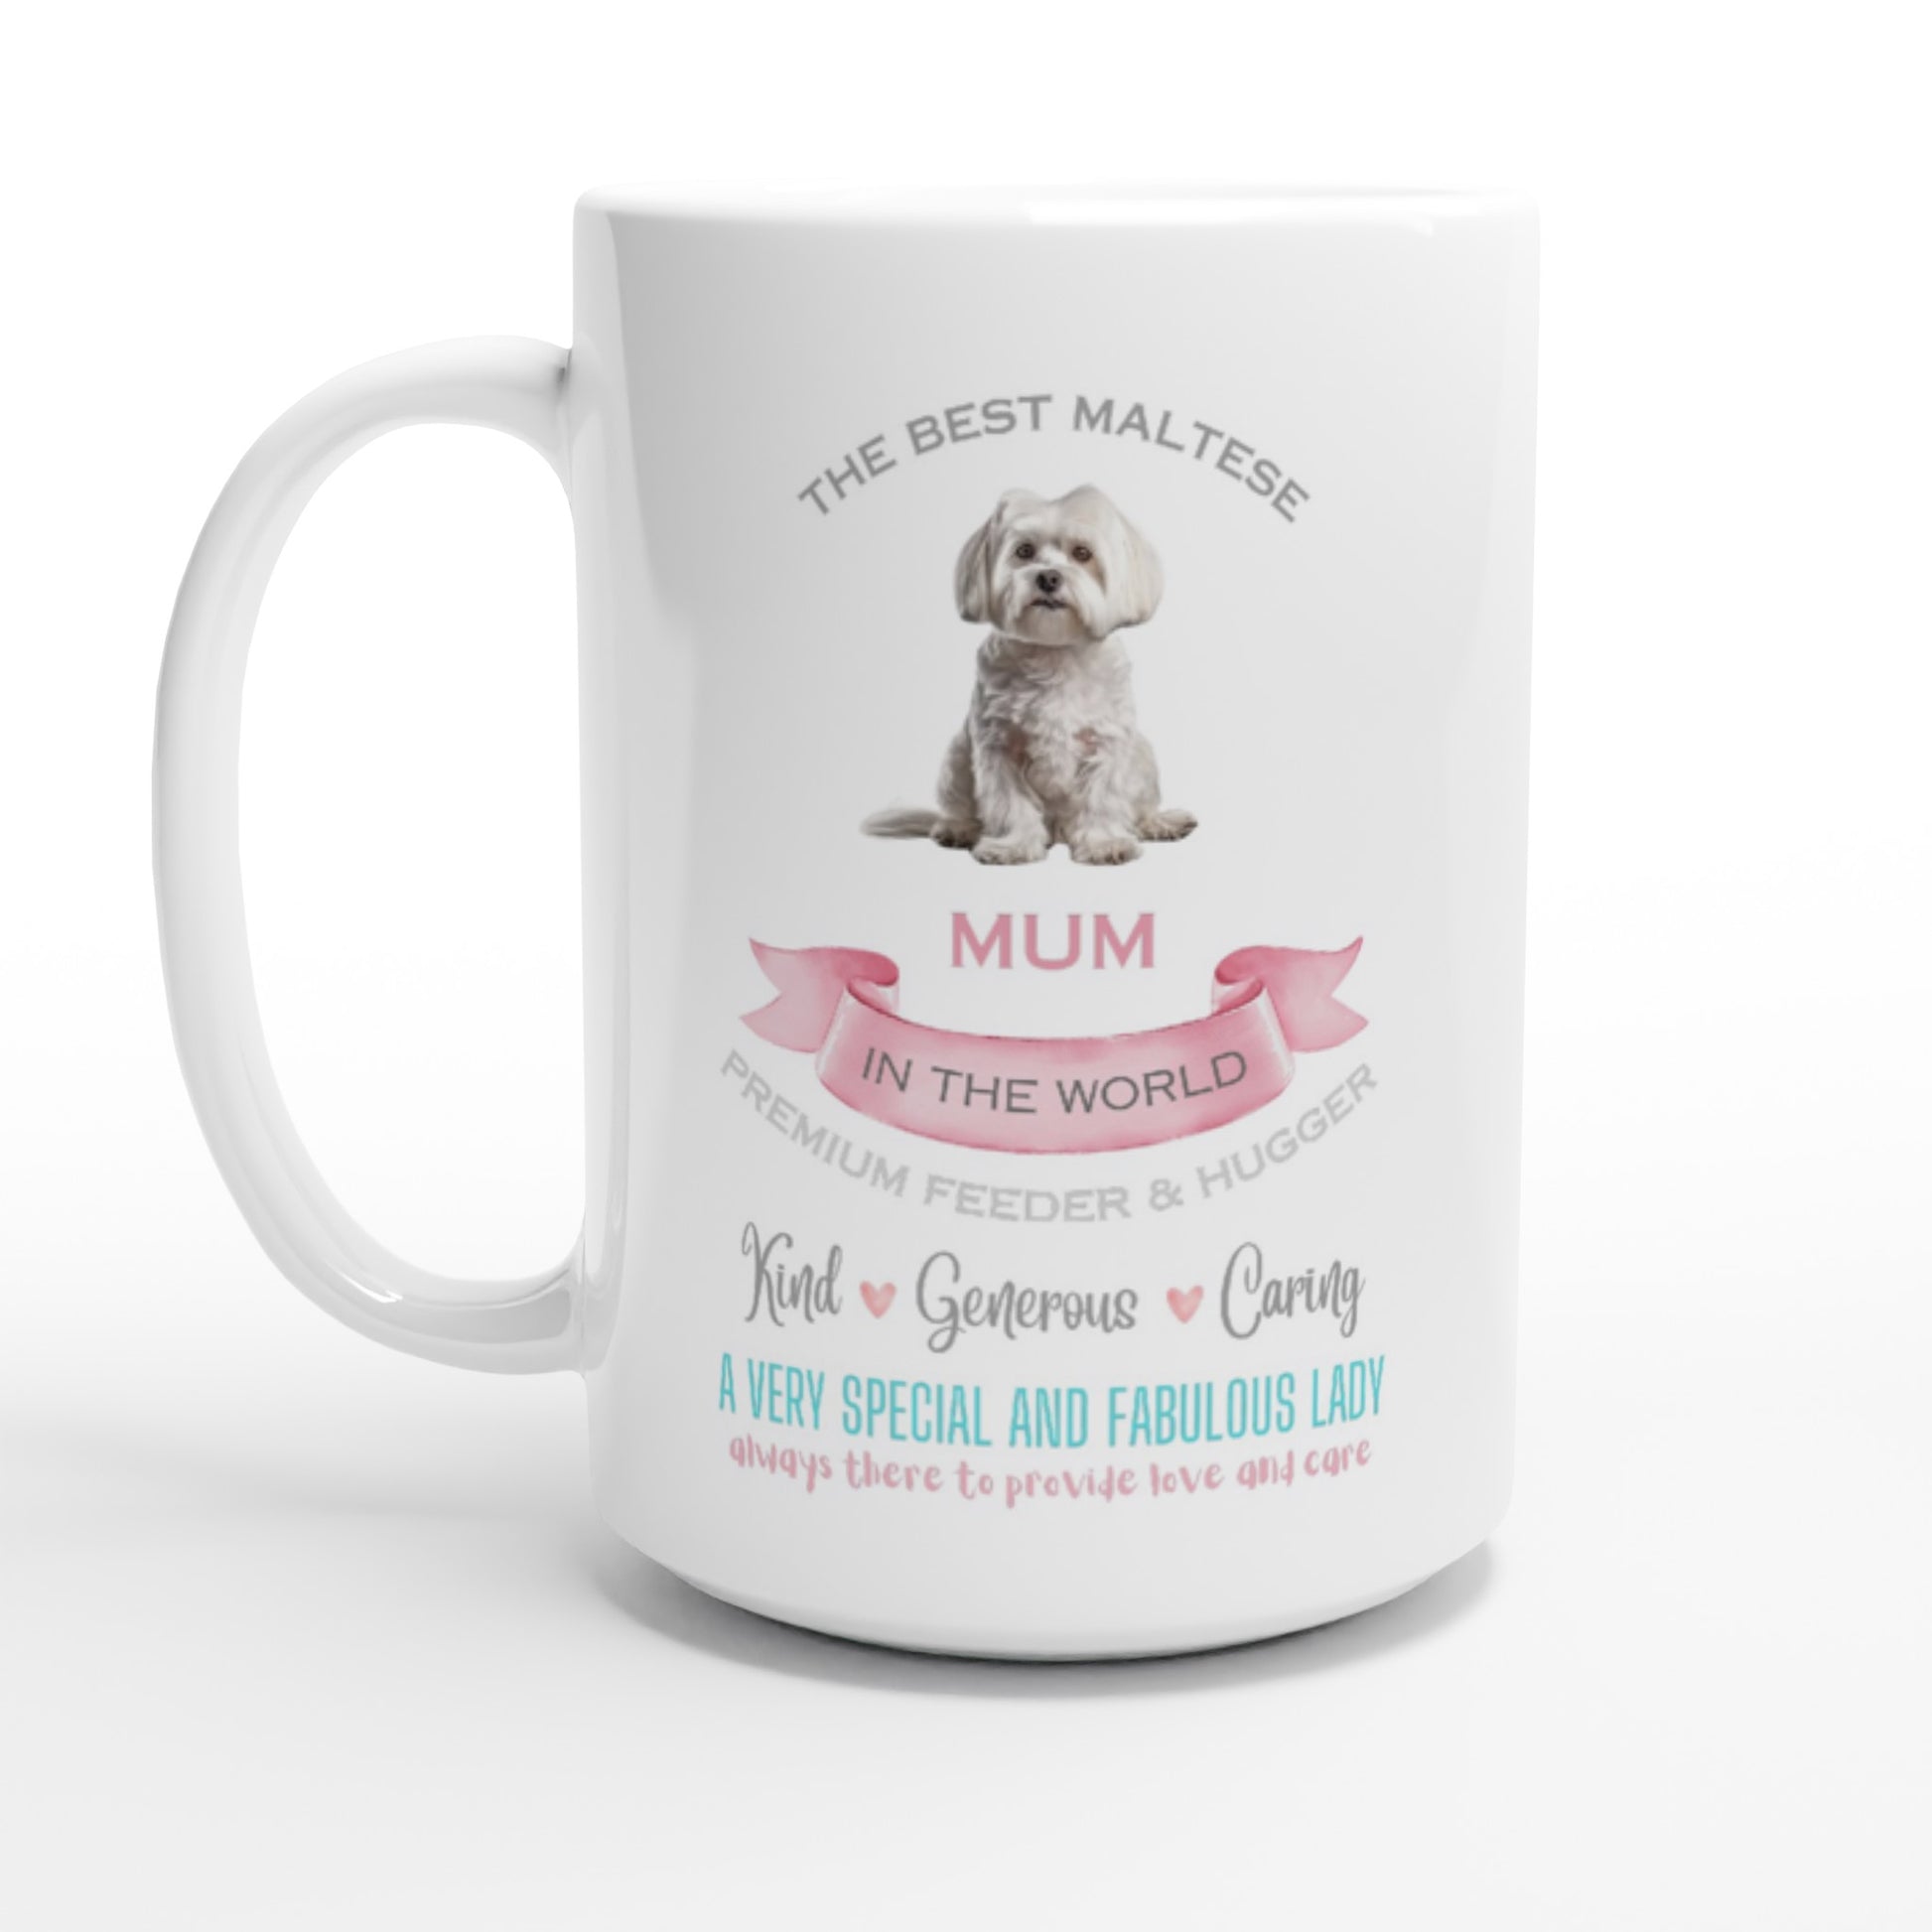 Maltese dog mug for mum